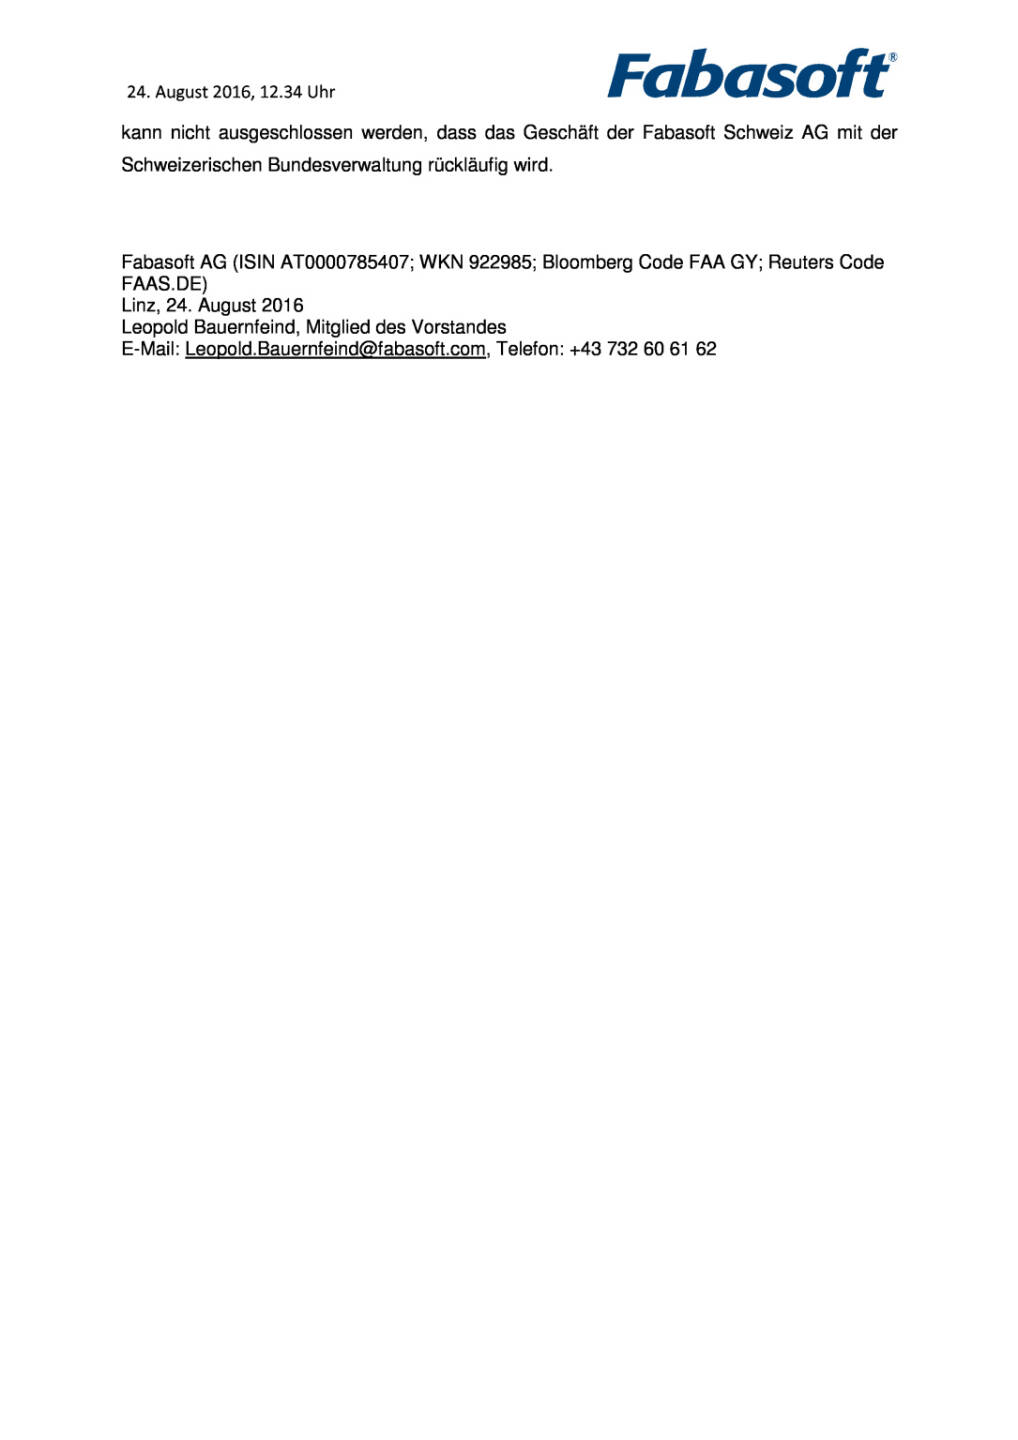 Fabasoft AG: Beschwerde bezüglich Ausschreibung zurückgewiesen, Seite 2/2, komplettes Dokument unter http://boerse-social.com/static/uploads/file_1669_fabasoft_ag_beschwerde_bezuglich_ausschreibung_zuruckgewiesen.pdf